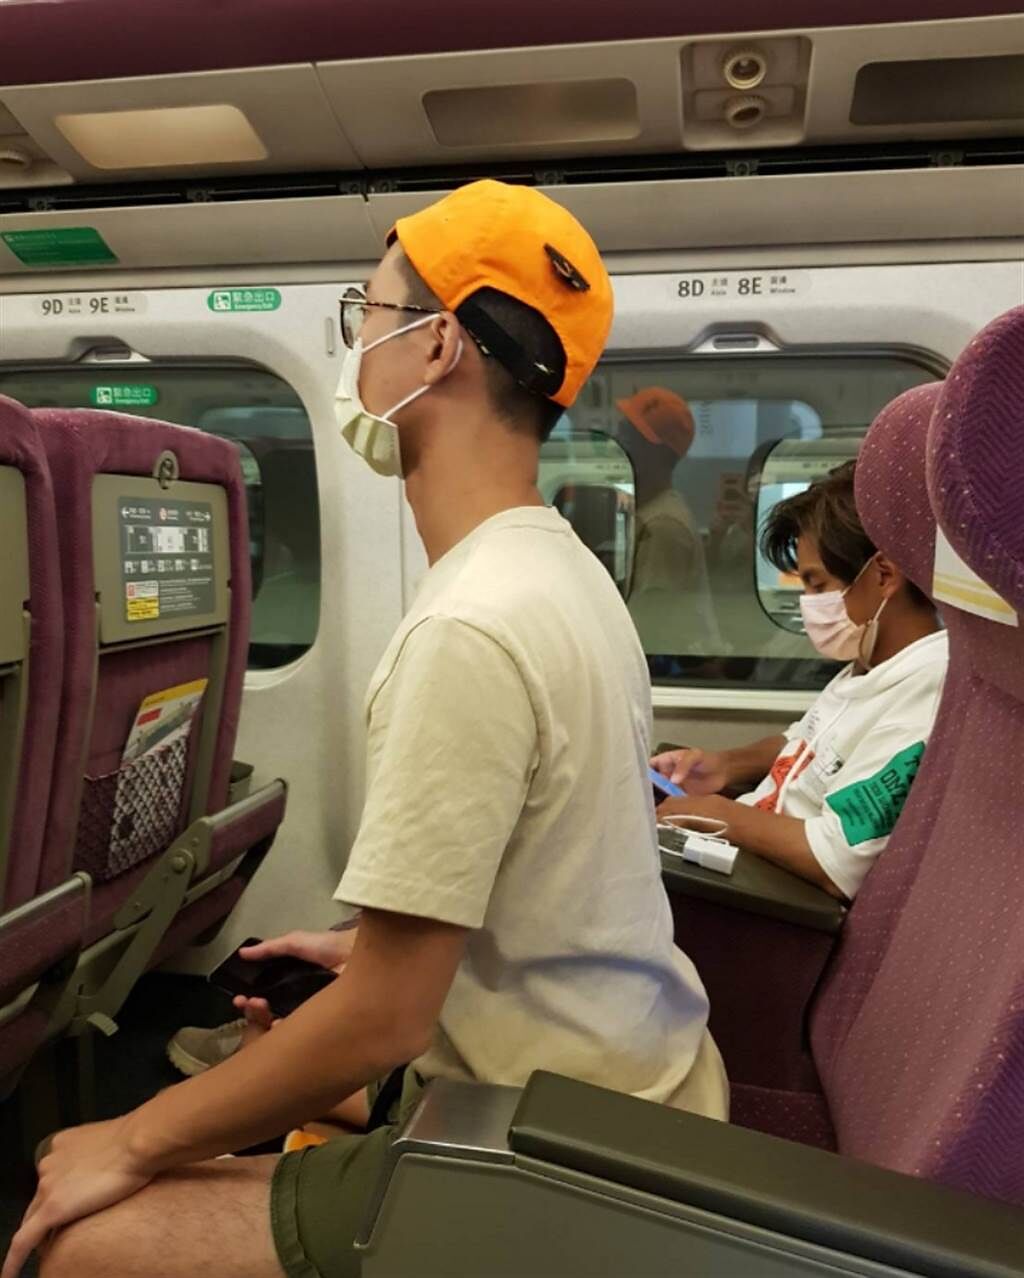 浩角翔起經紀人在臉書粉專貼出兩人搭高鐵坐一起的罕見畫面。(圖/ 摘自浩角翔起笑一個官方粉絲專頁臉書)